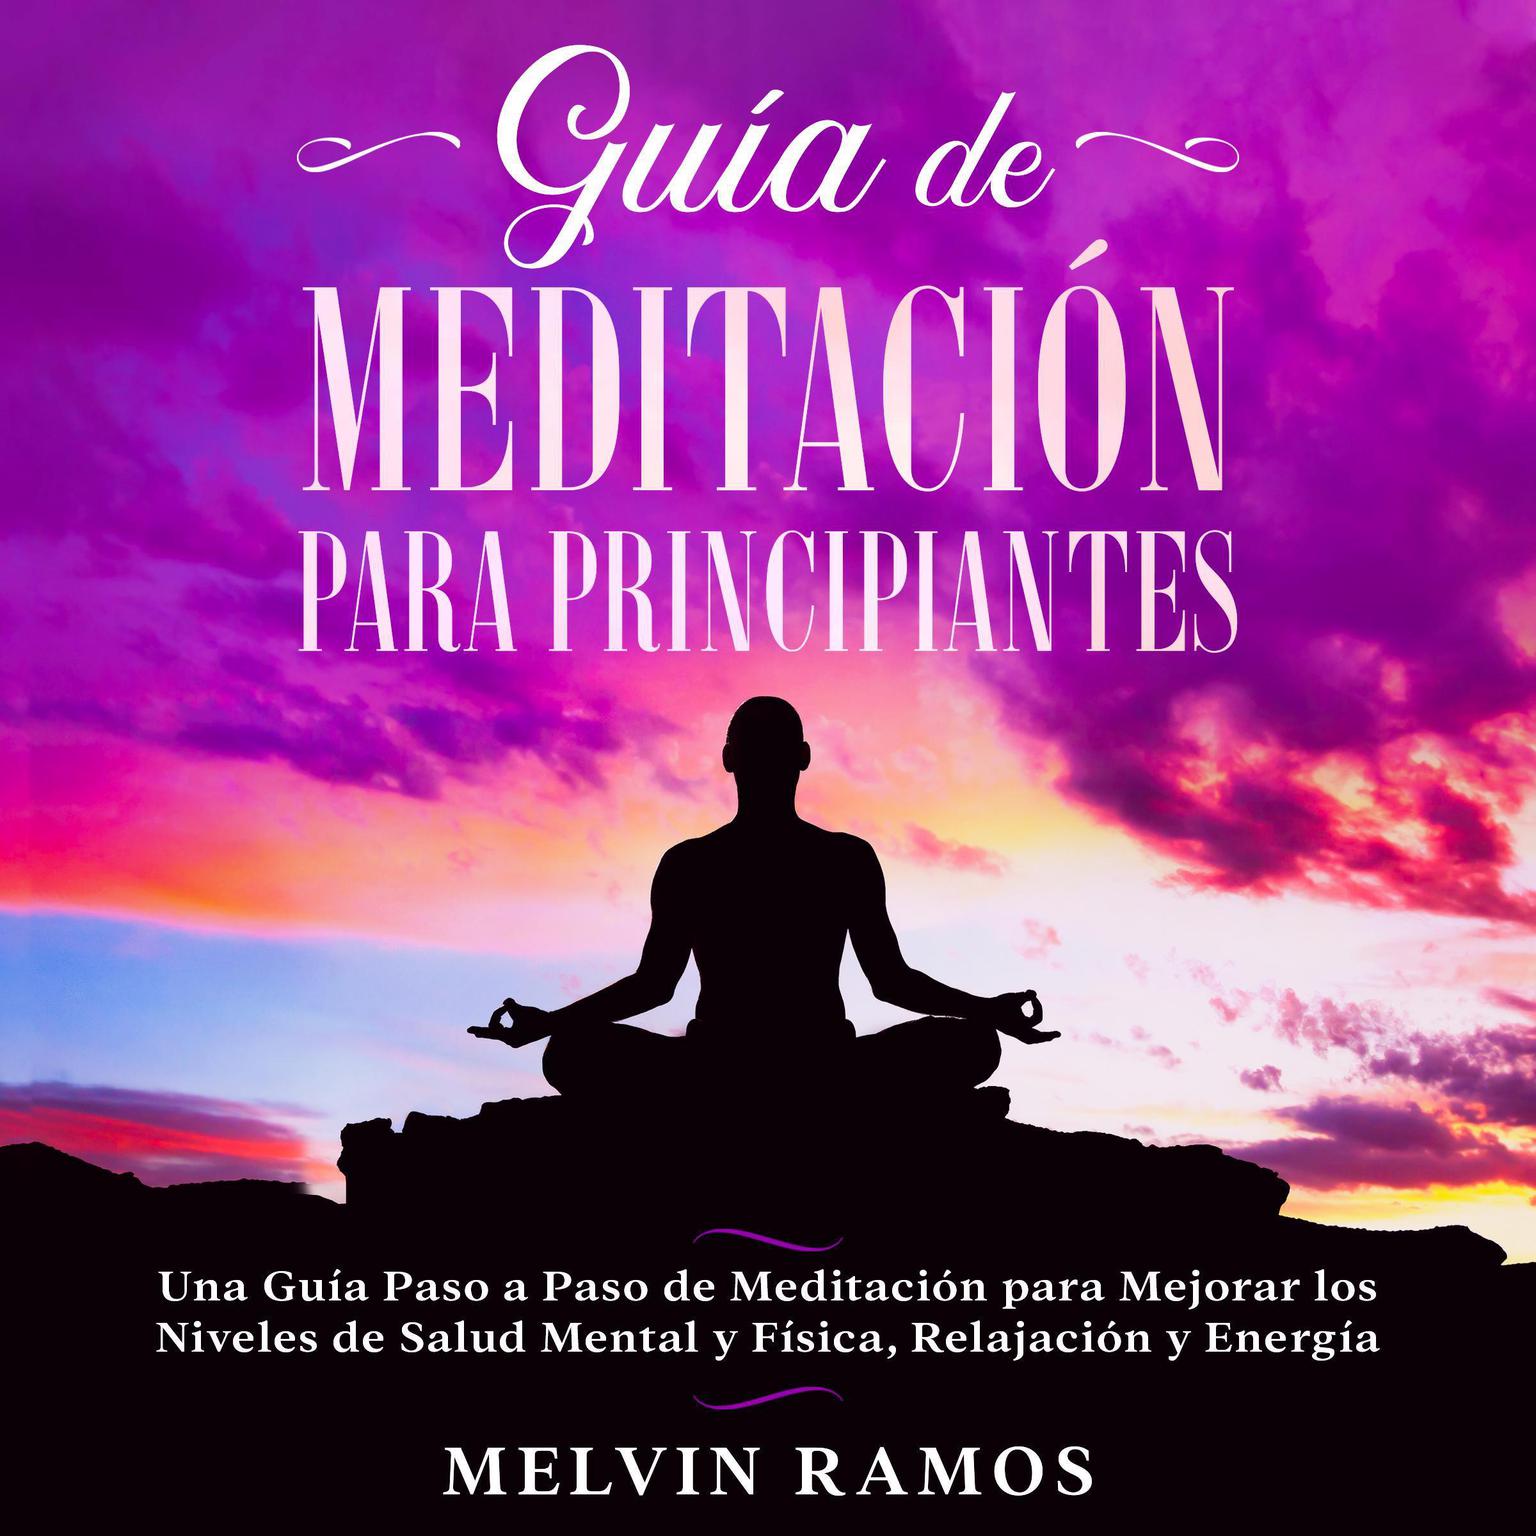 Guía de Meditación para Principiantes: Una Guía Paso a Paso de Meditación para Mejorar los Niveles de Salud Mental y Física, Relajación y Energía Audiobook, by Melvin Ramos